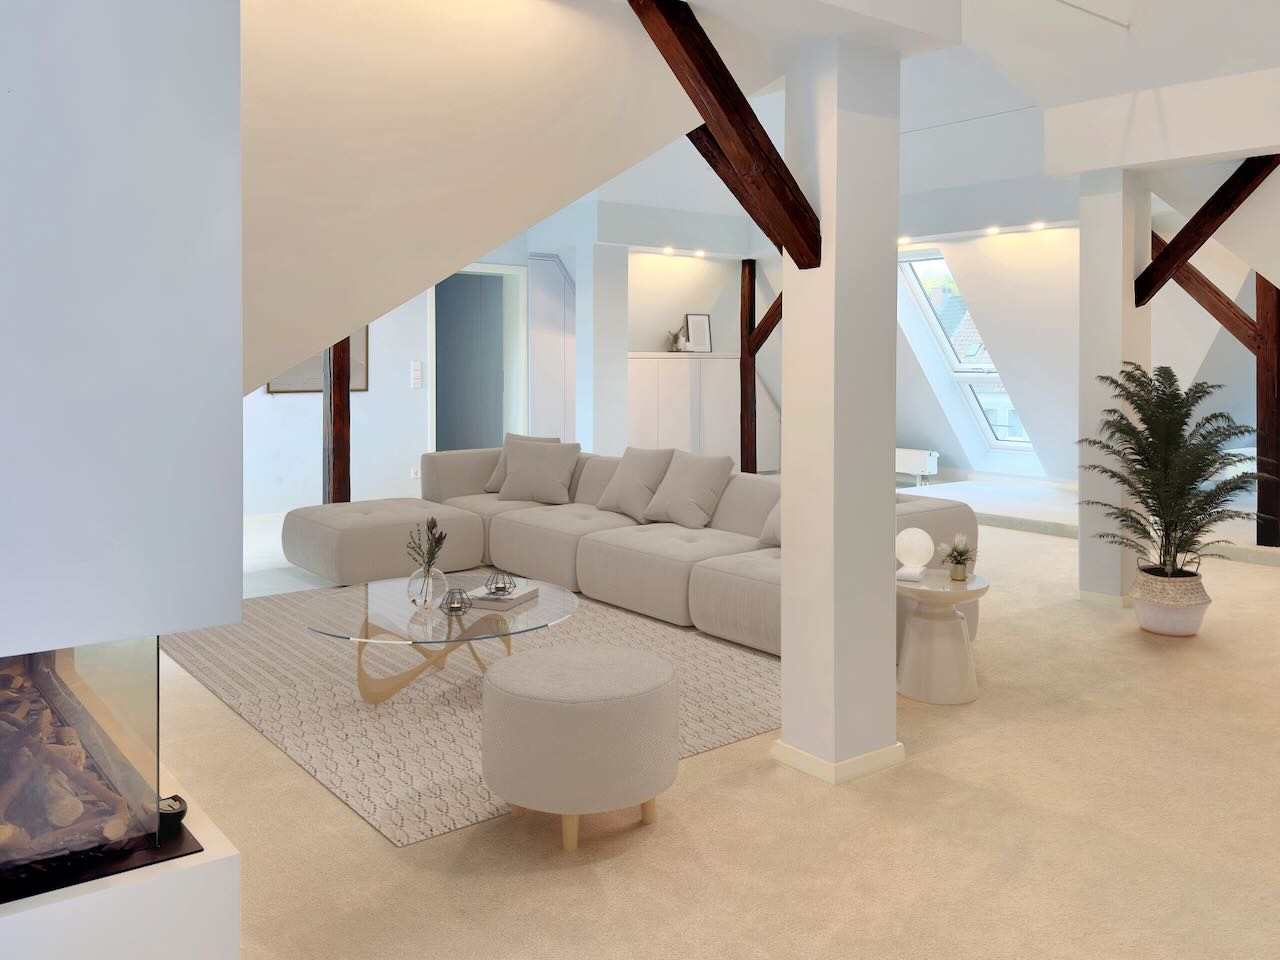 Maisonette-Penthouse in Kleefeld: Dachterrasse und Balkon, Design-EBK, Sauna, 2 Bäder etc.